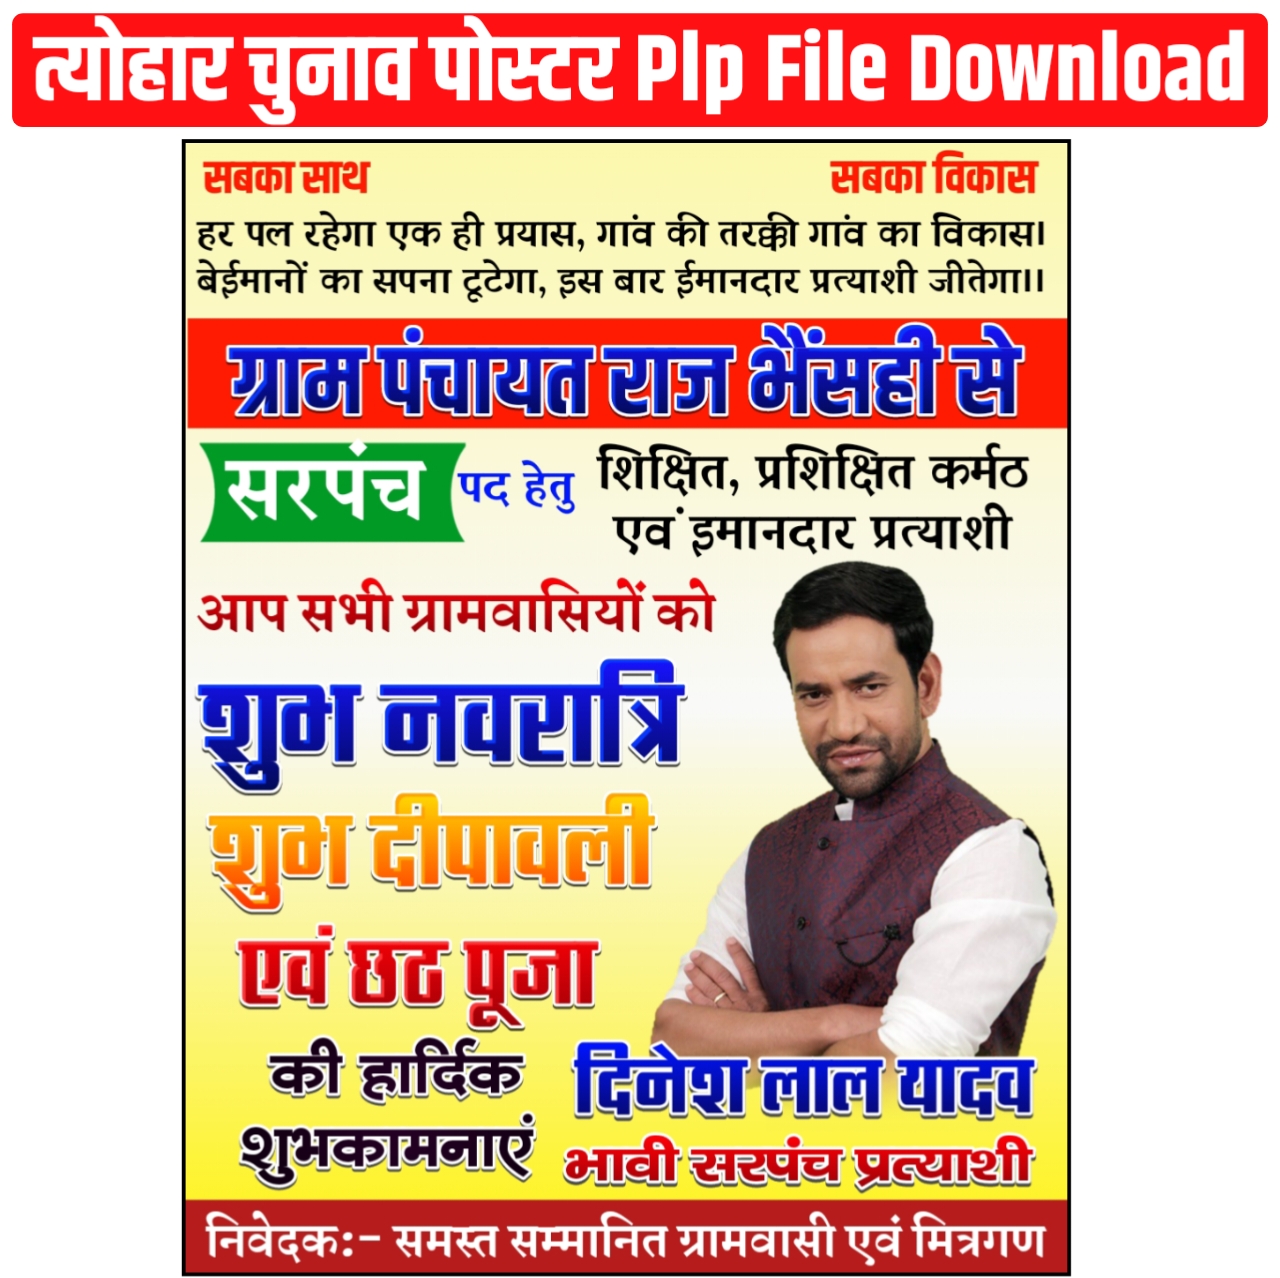 Sarpanch Pad Hetu Chunav Poster Plp File 2125 Download